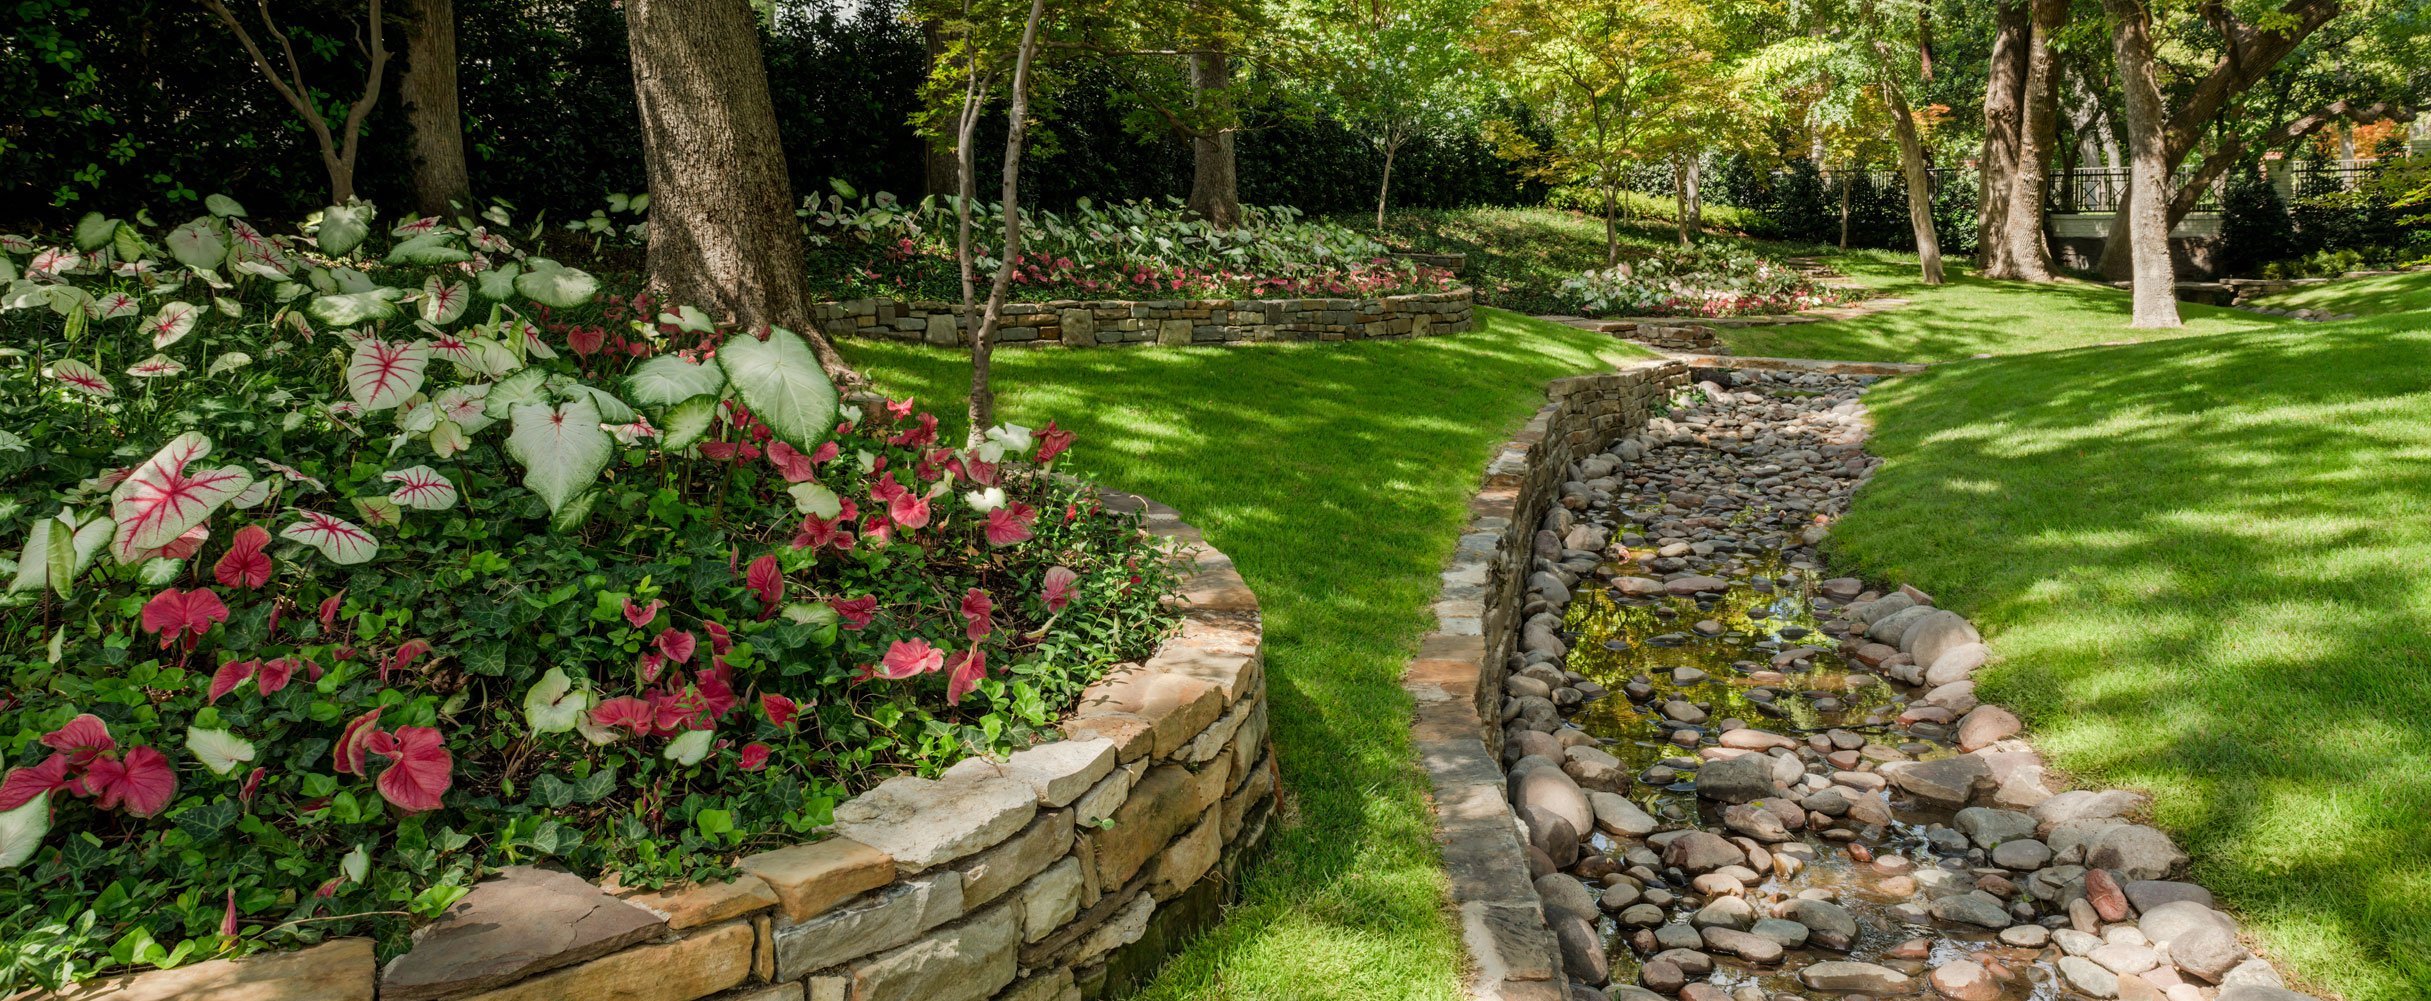 Landscaping and Garden Designer - Dallas Landscape Design